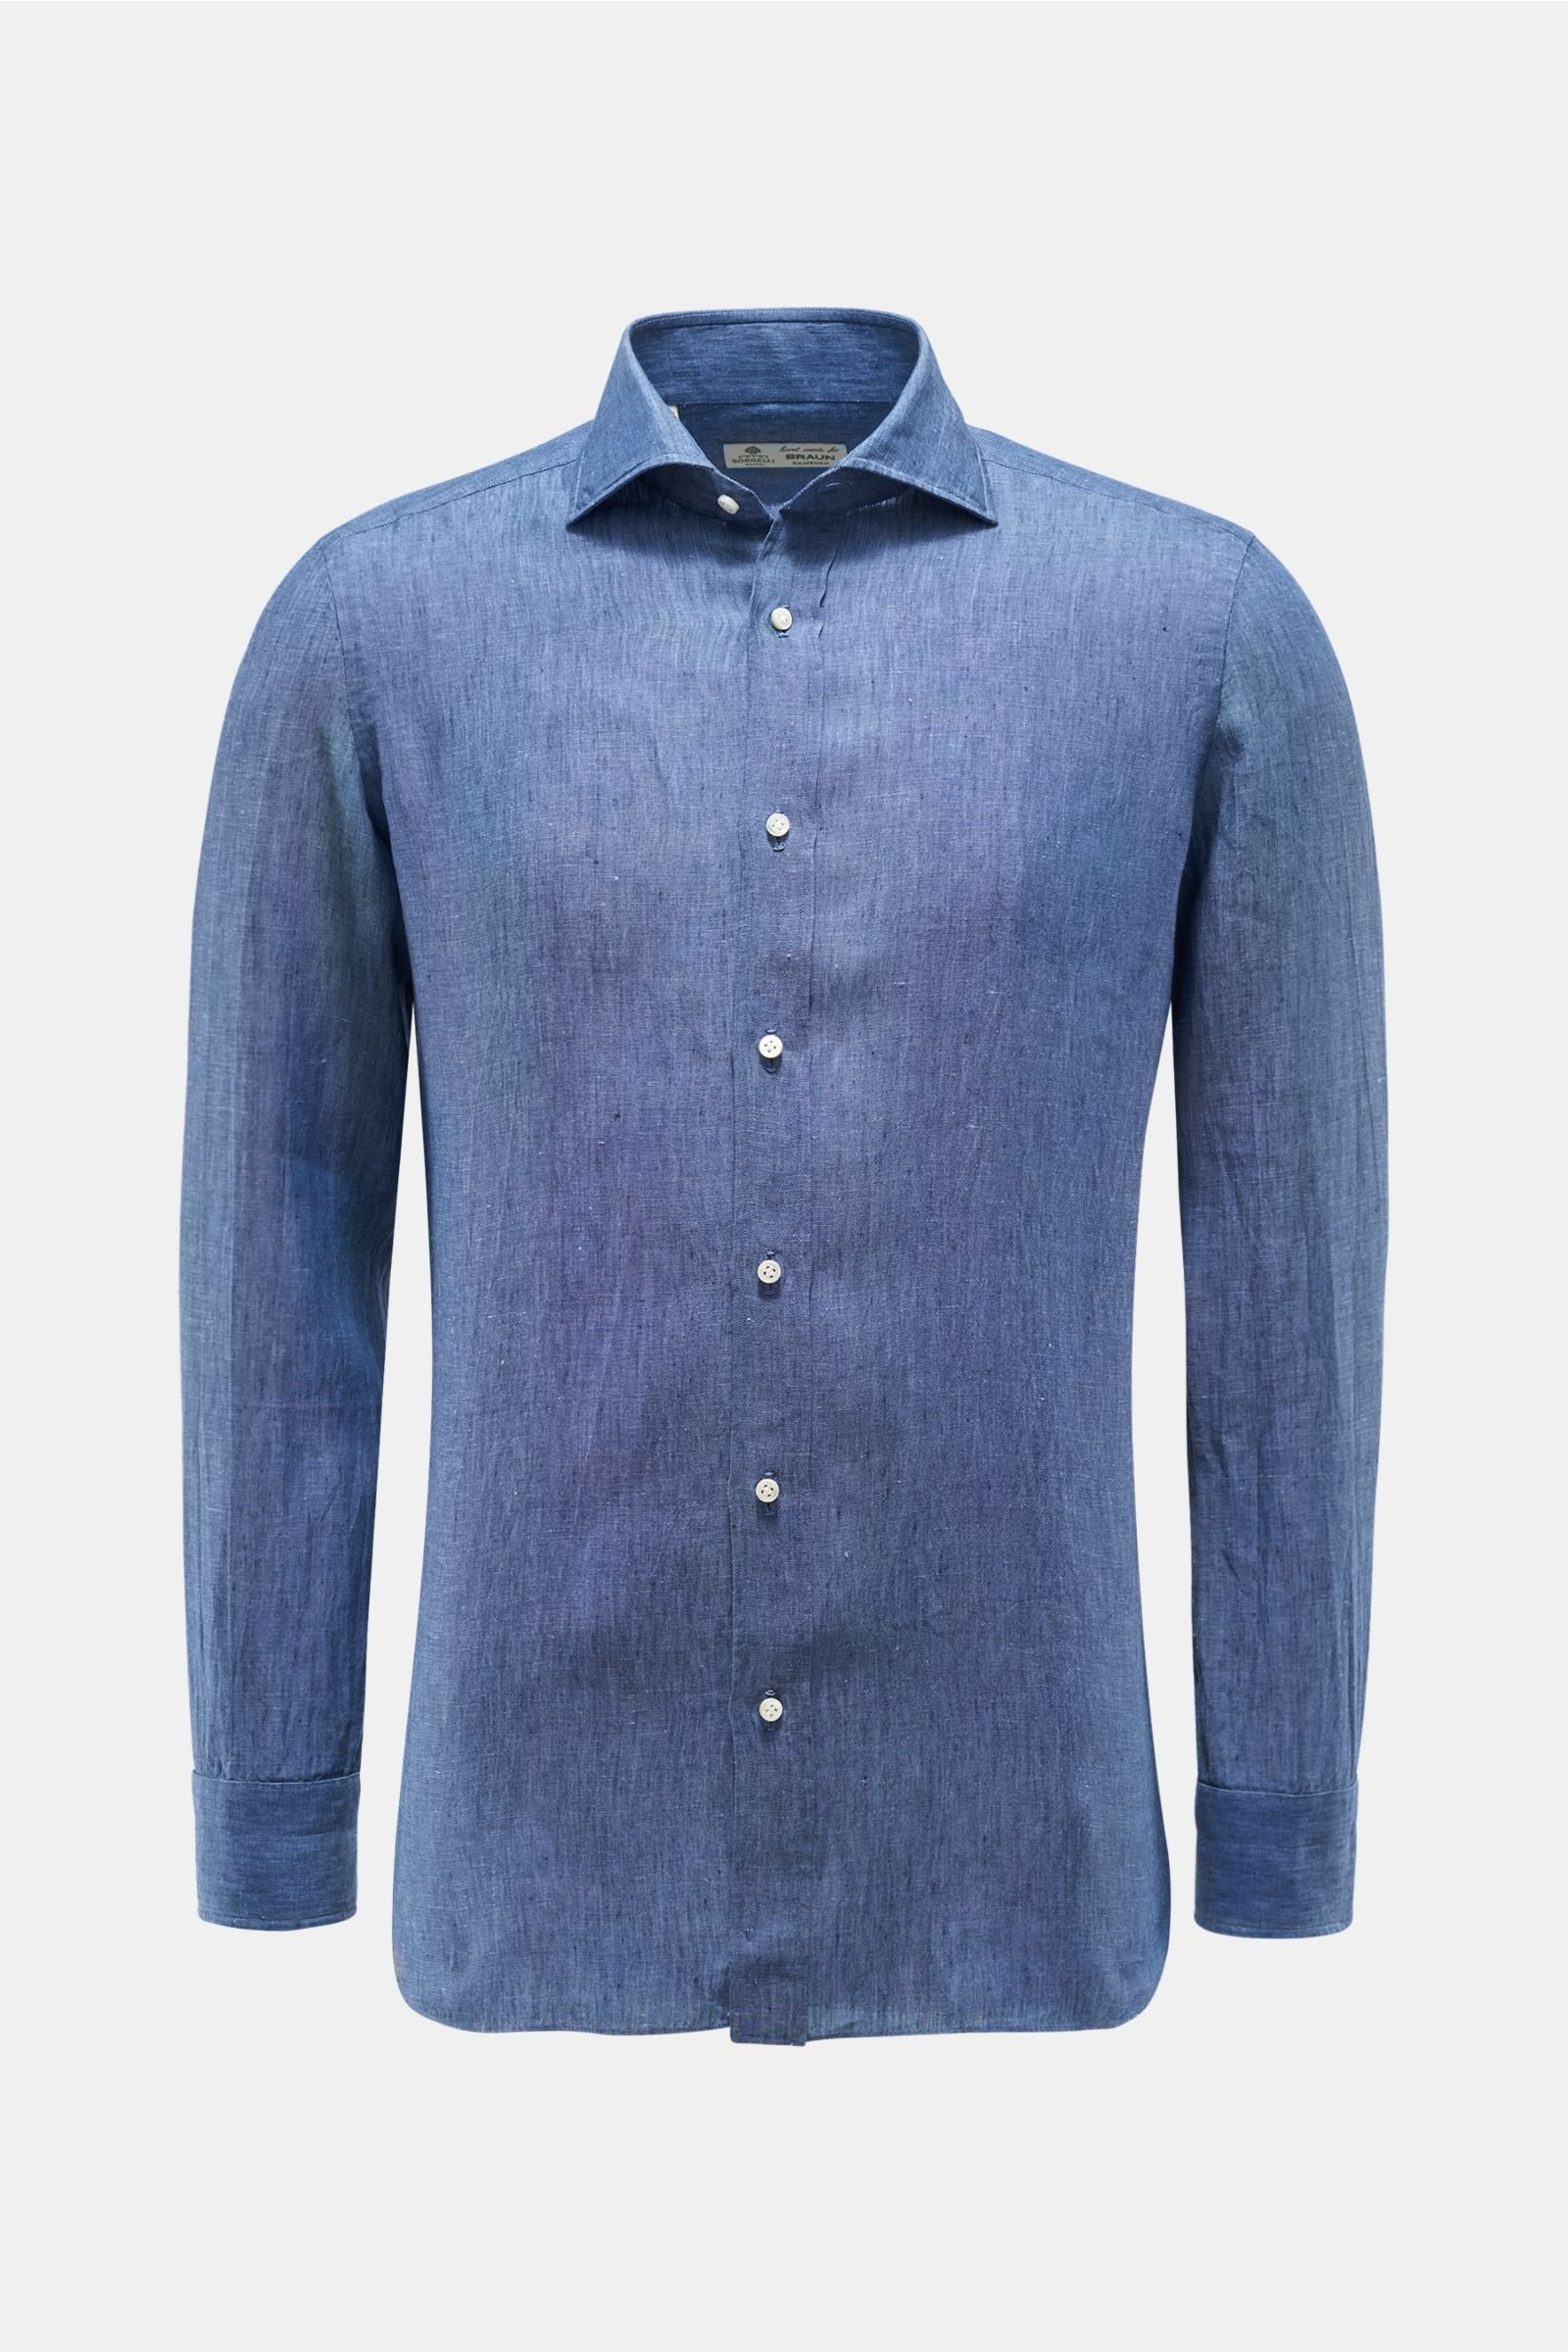 Linen shirt 'Ettore' shark collar grey-blue